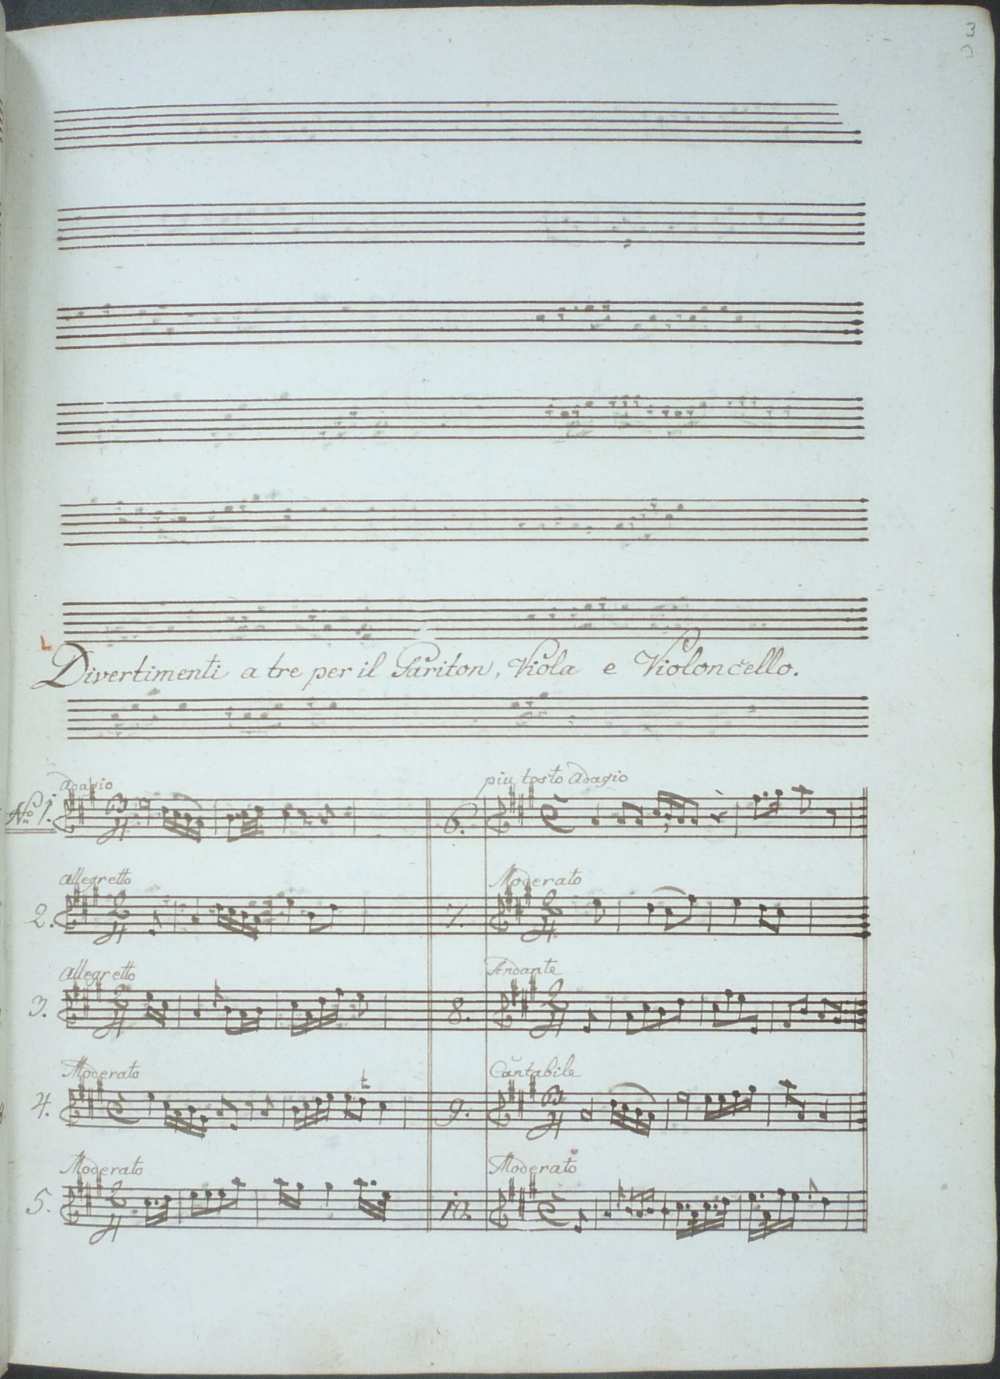 Haydn műveinek jegyzéke. Johann Elssler, a zeneszerző segédjének kéziratos műlistájának borítója, valamint A baryton-művek jegyzékének egyik oldala – Színháztörténeti és Zeneműtár, Ms. Mus. 14.852